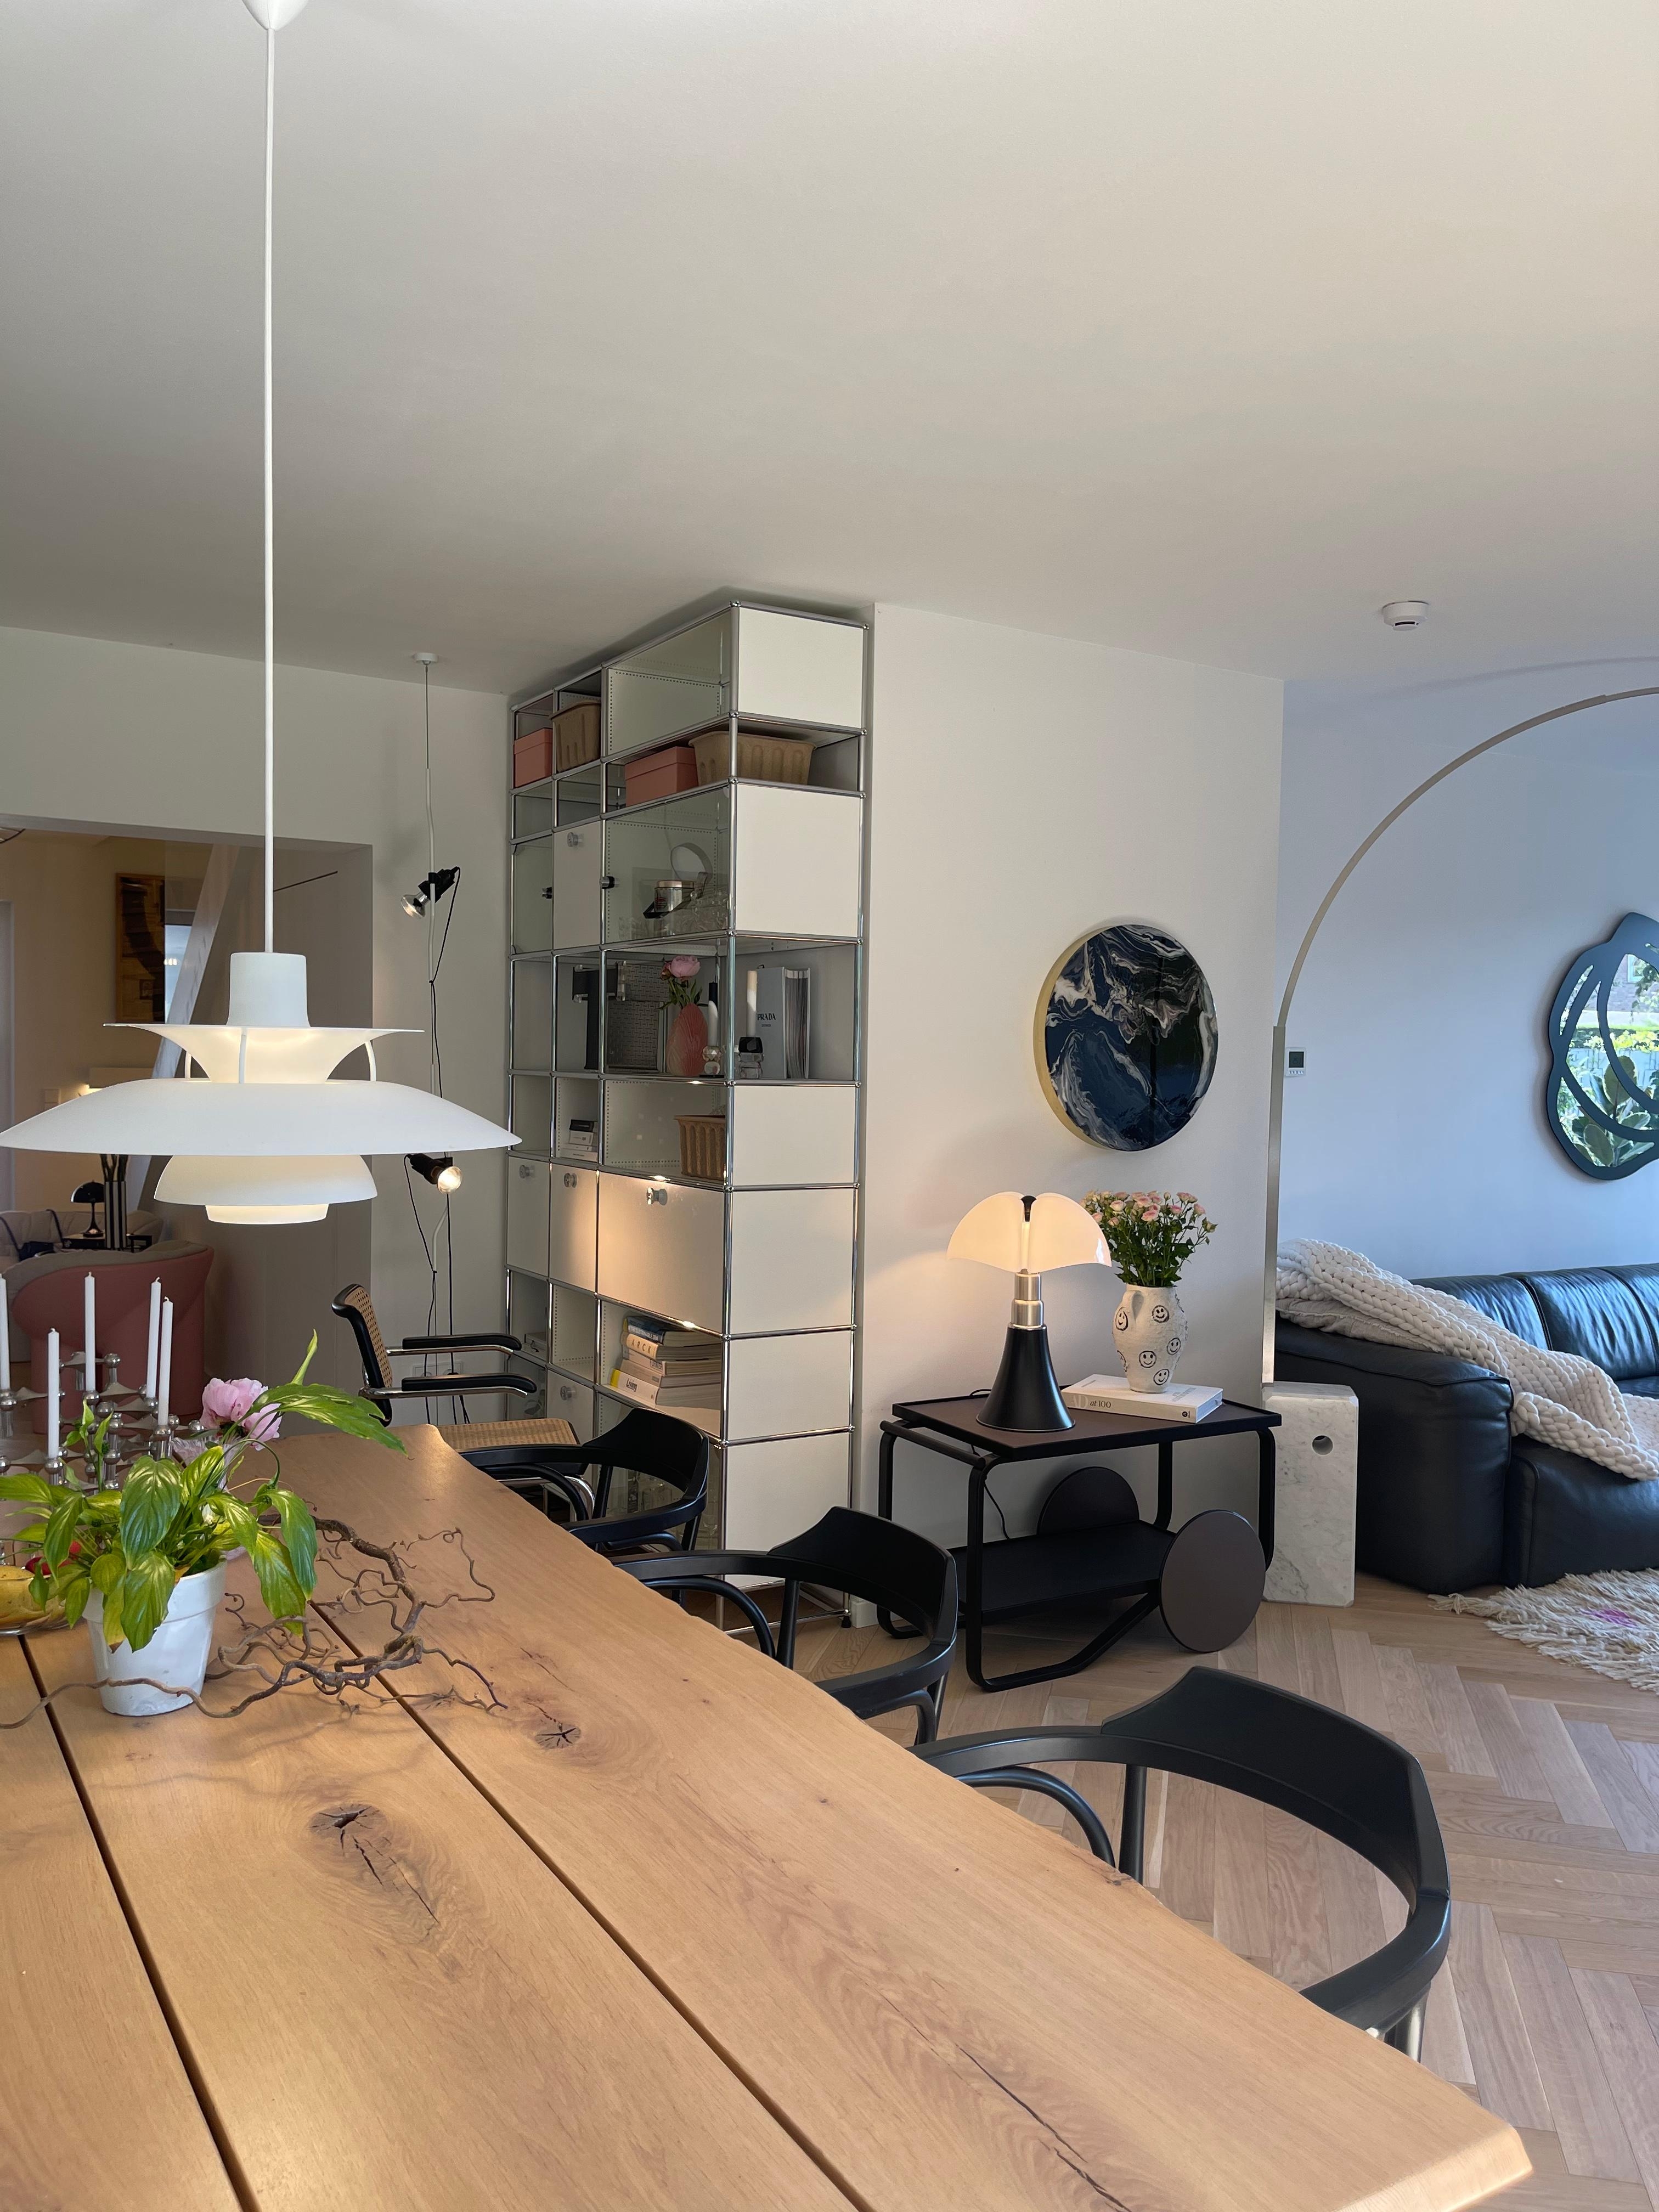 Mein Wohnbereich❤️
#livingroom #classyinterior #designklassiker #wohnzimmer